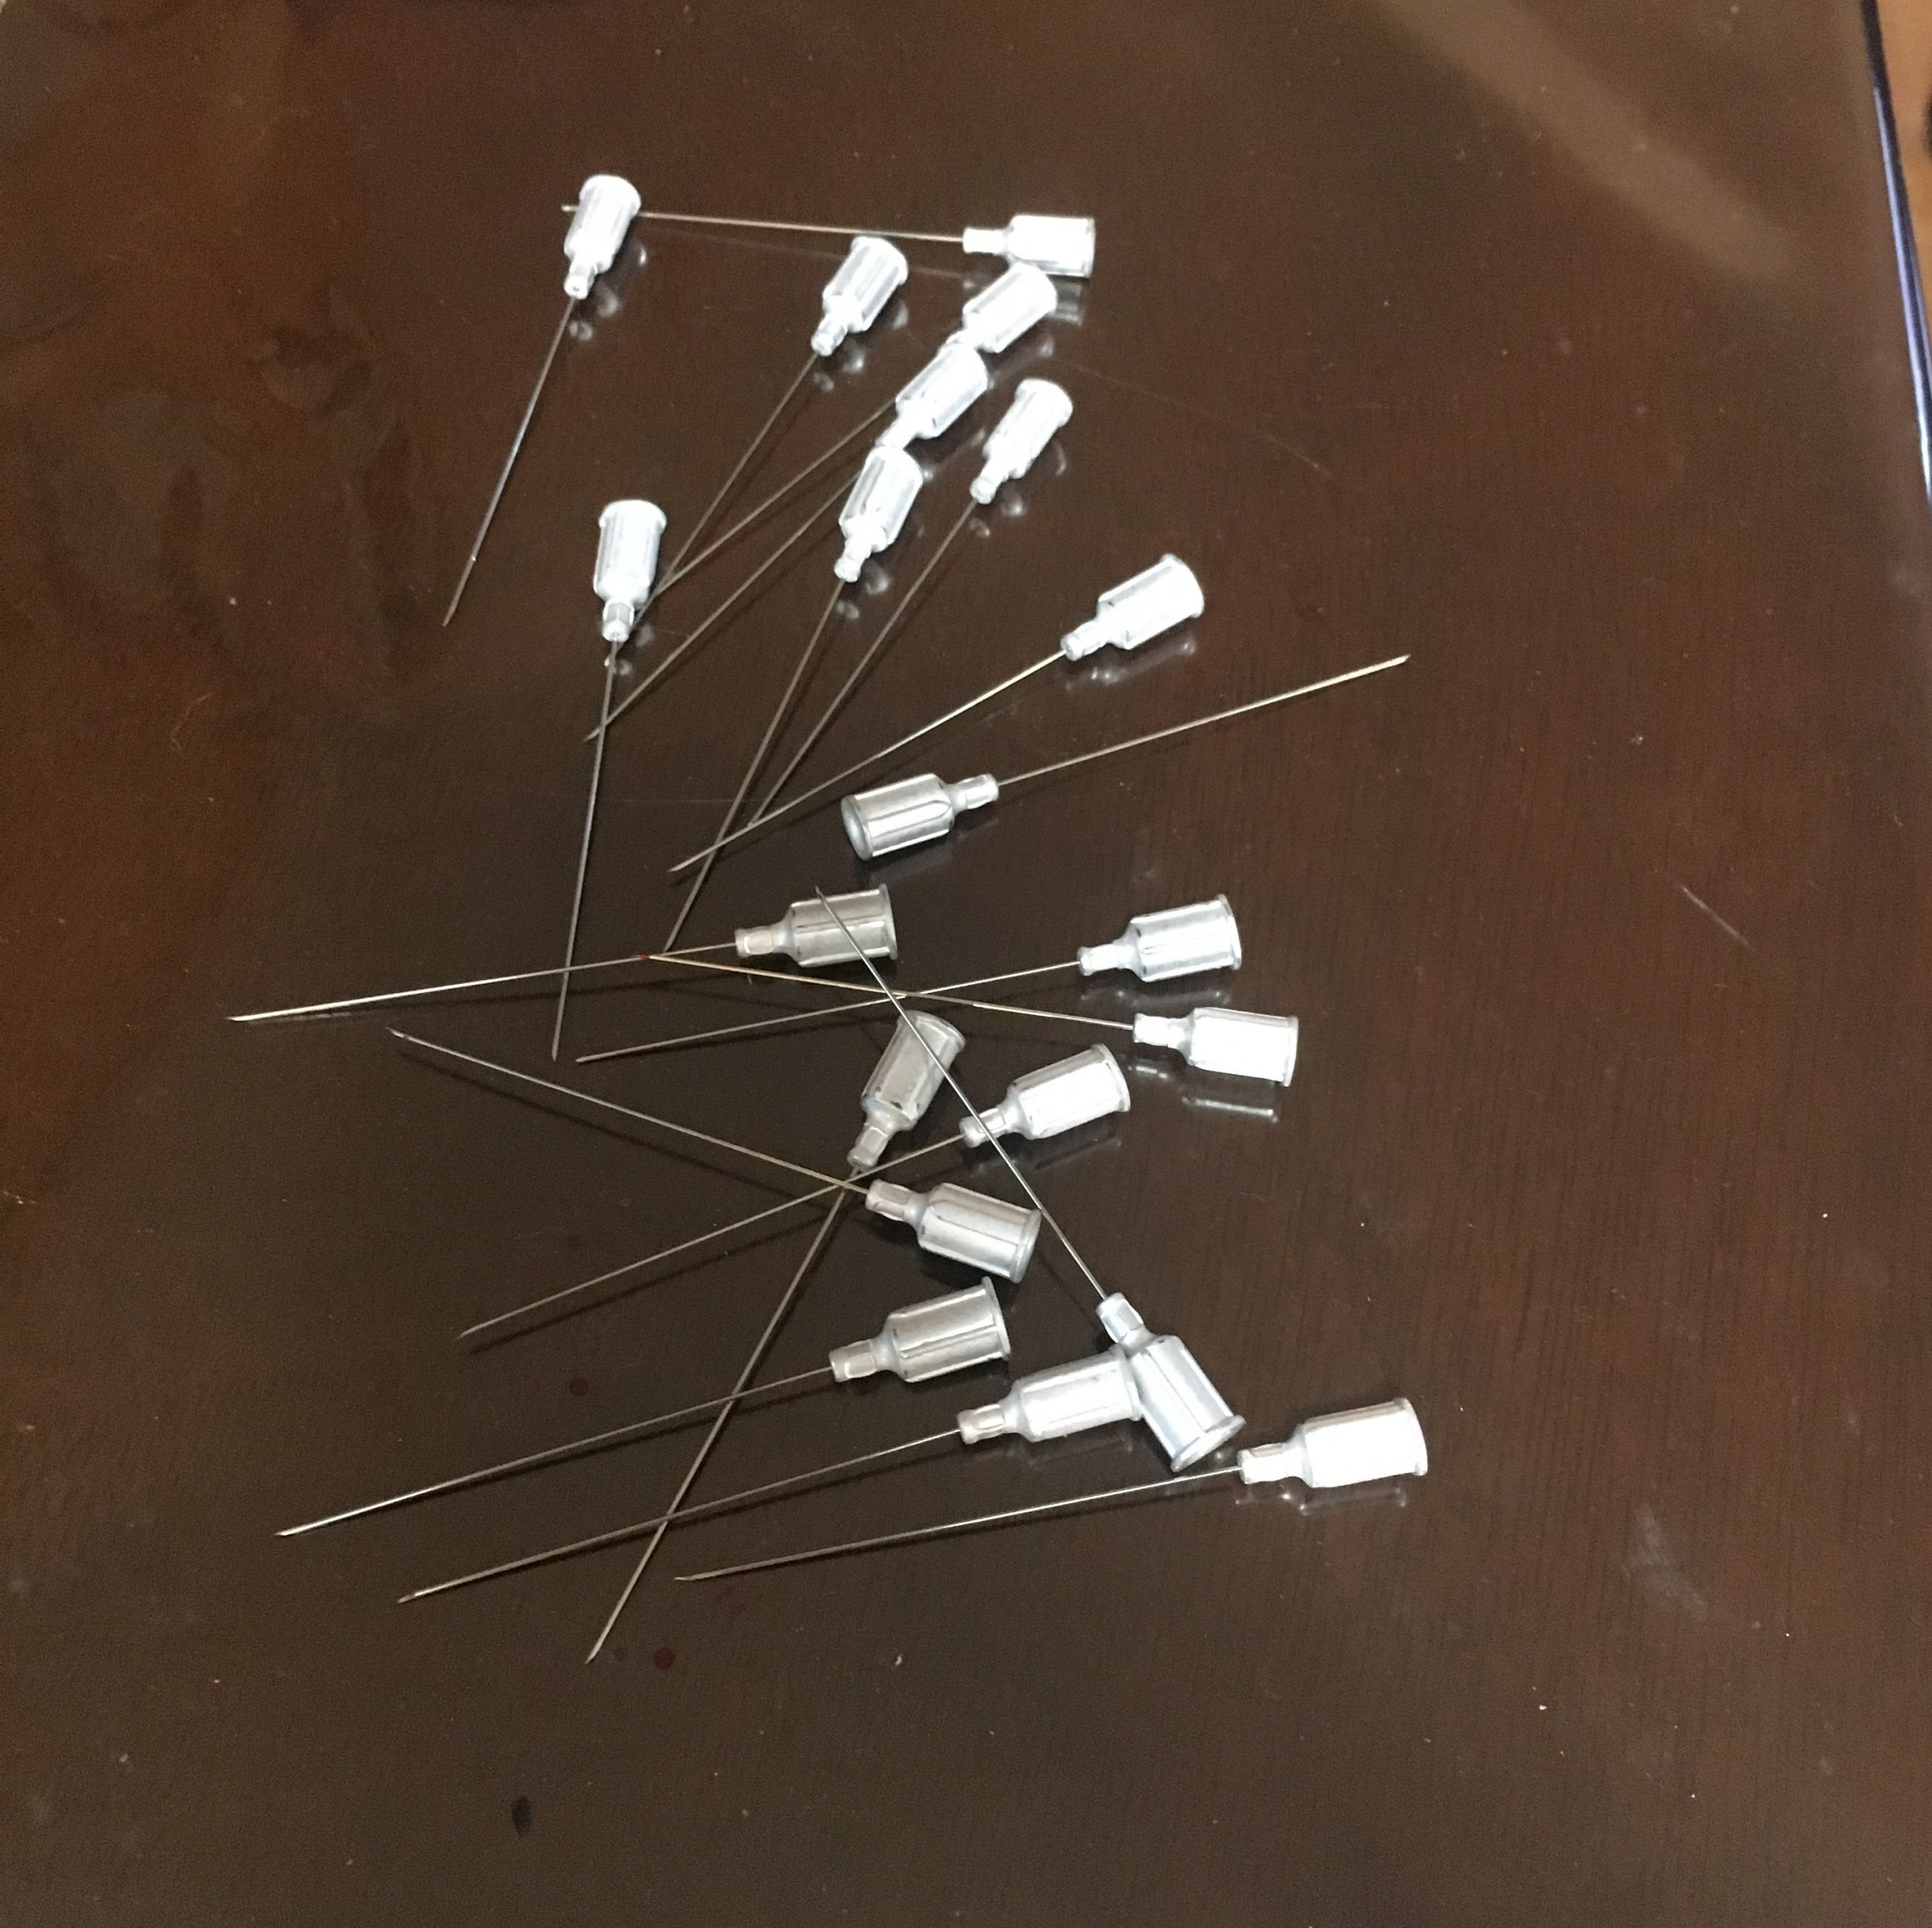 2.5 inch needles